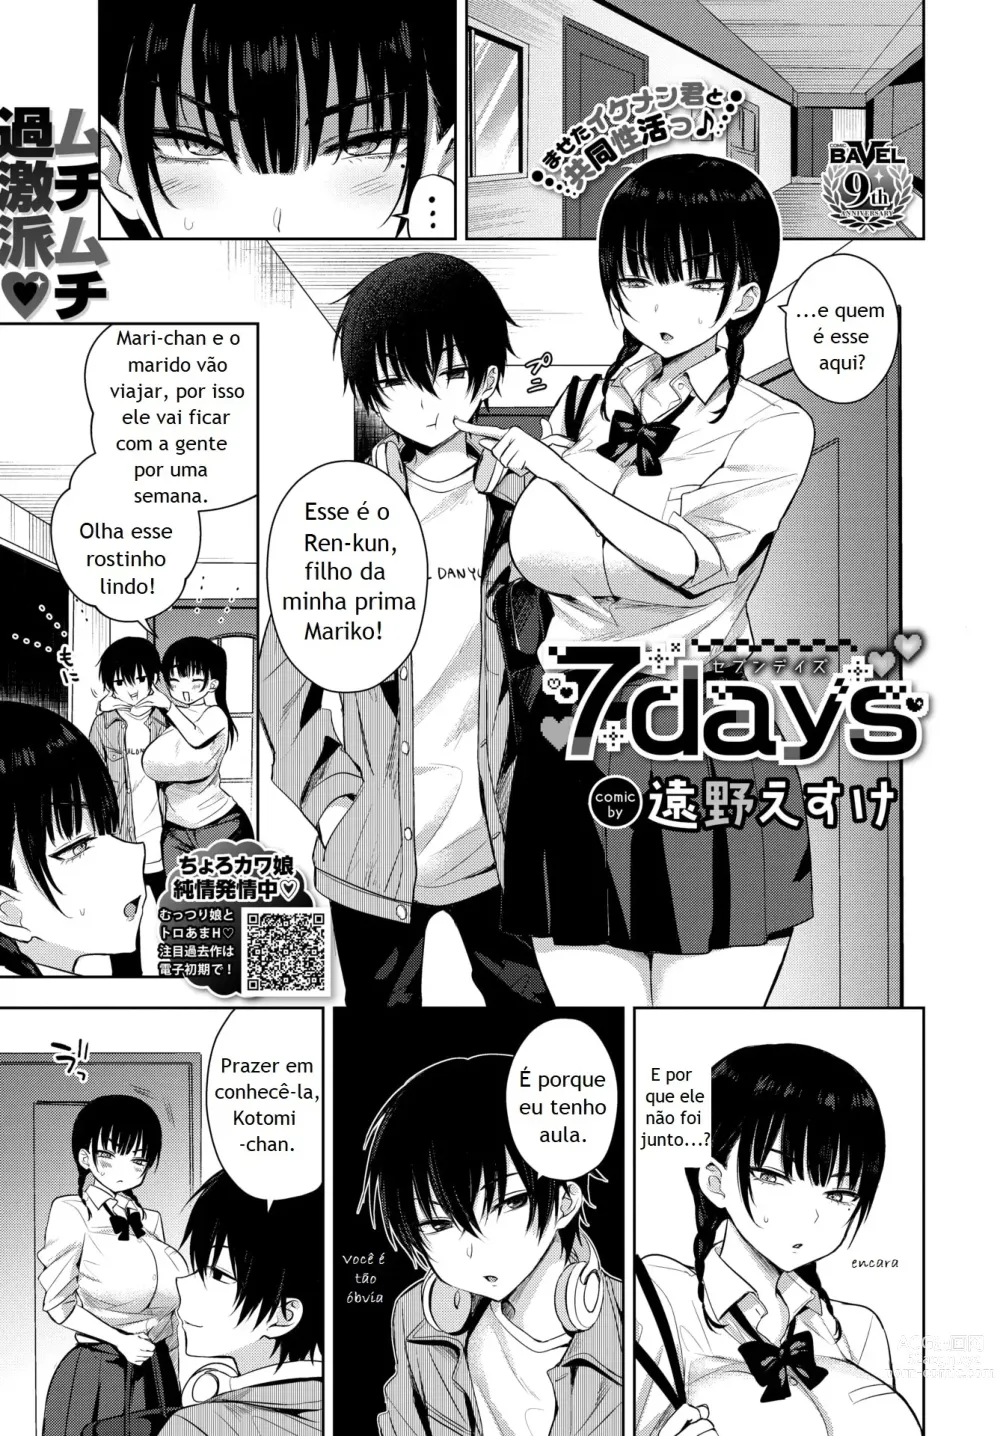 Page 1 of manga 7 Days